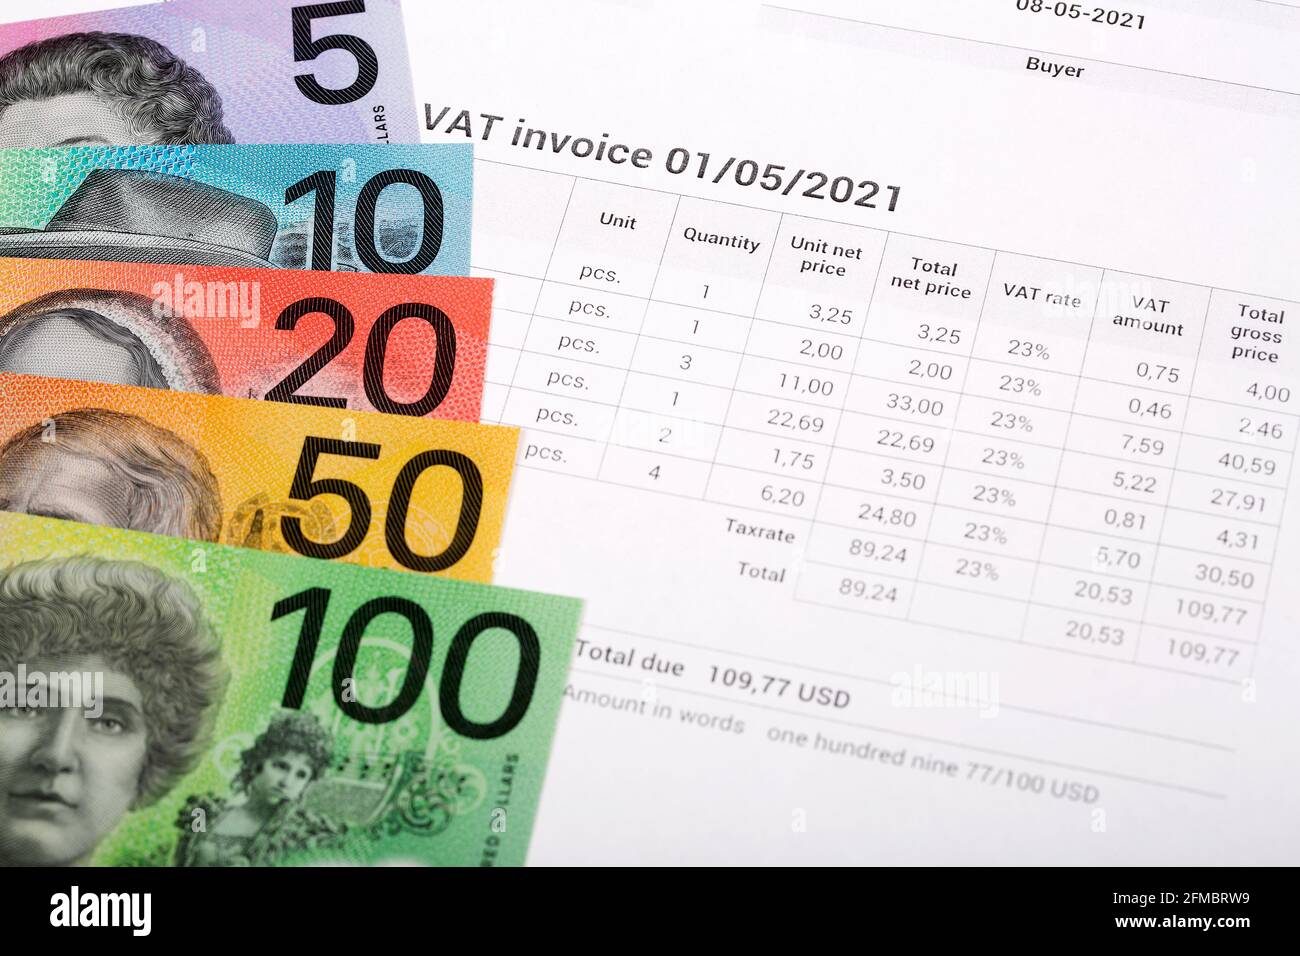 Fattura IVA con denaro australiano Foto Stock